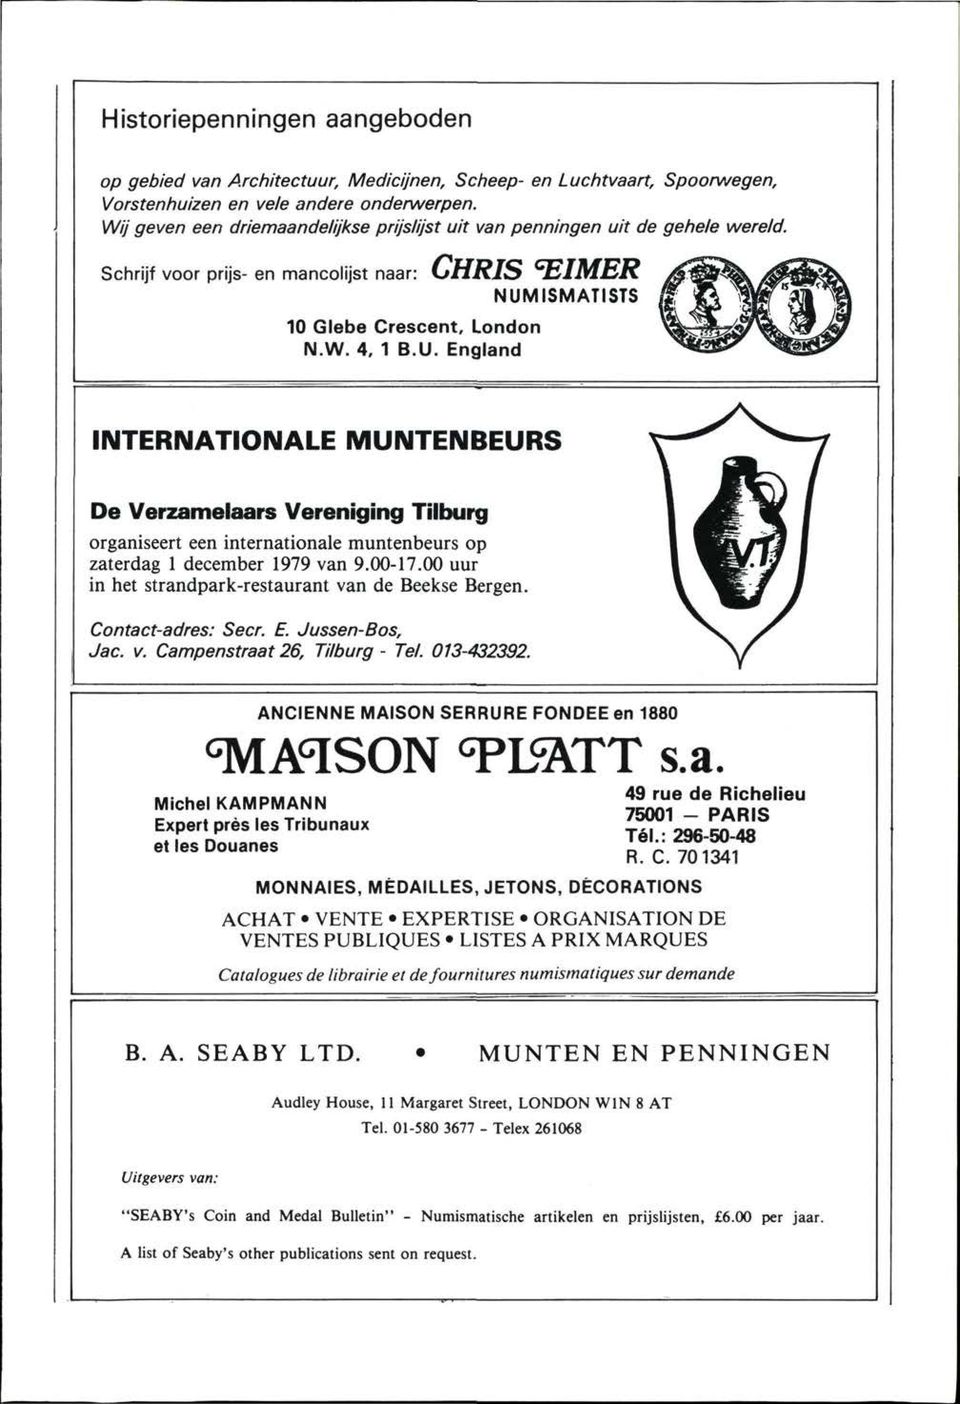 ISMATISTS 10 Glebe Crescent, London N.W. 4. 1 B.U. England INTERNATIONALE MUNTENBEURS De Verzamelaars Vereniging Tilburg organiseert een internationale muntenbeurs op zaterdag 1 december 1979 van 9.